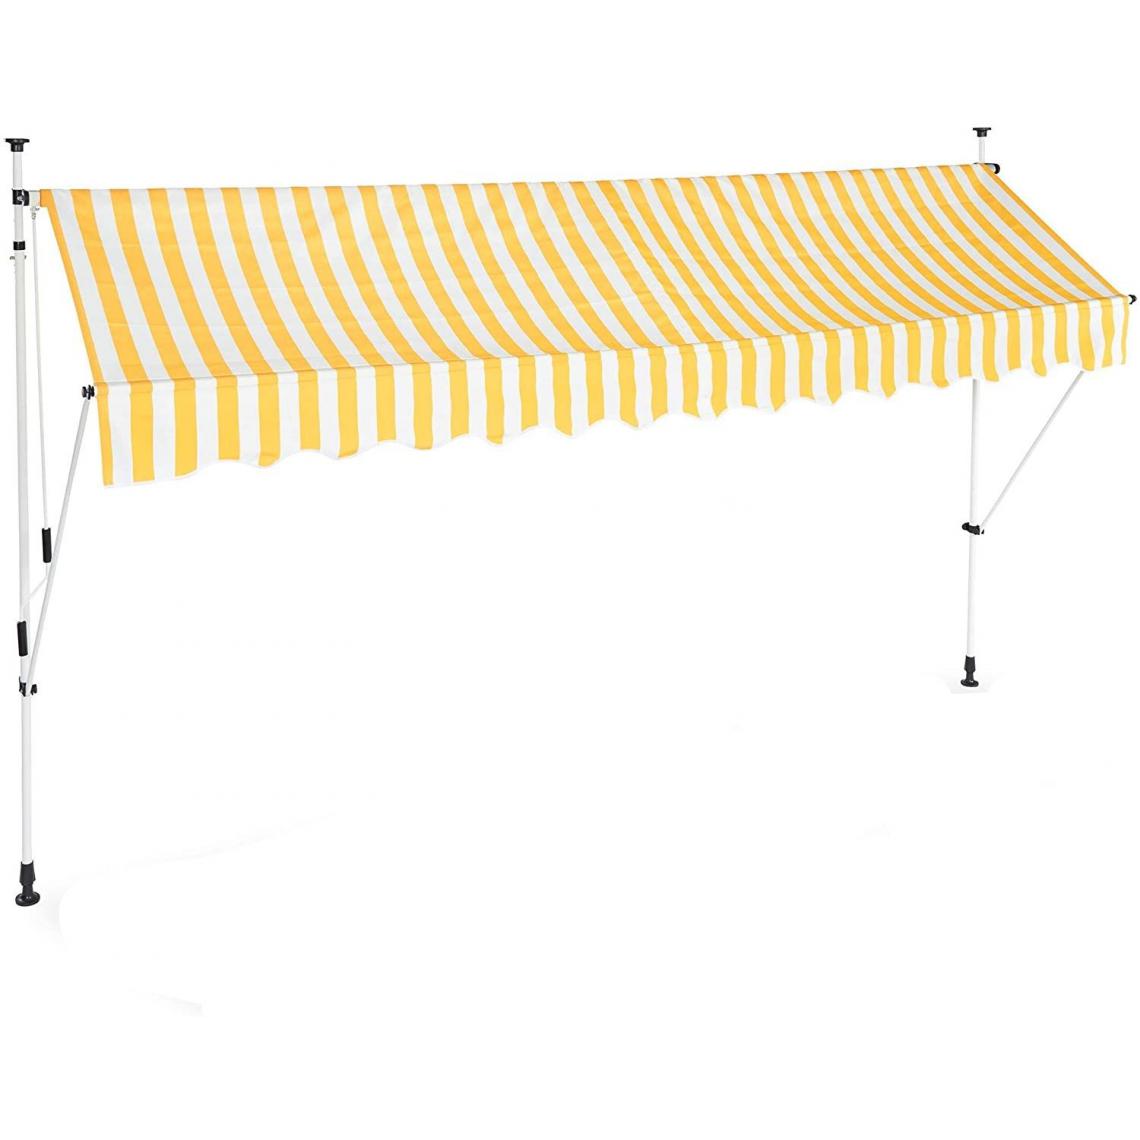 Helloshop26 - Store banne télescopique de balcon manivelle hauteur réglable résistant uv polyester acier 350 x 120 cm blanc et jaune 13_0001619_3 - Store banne